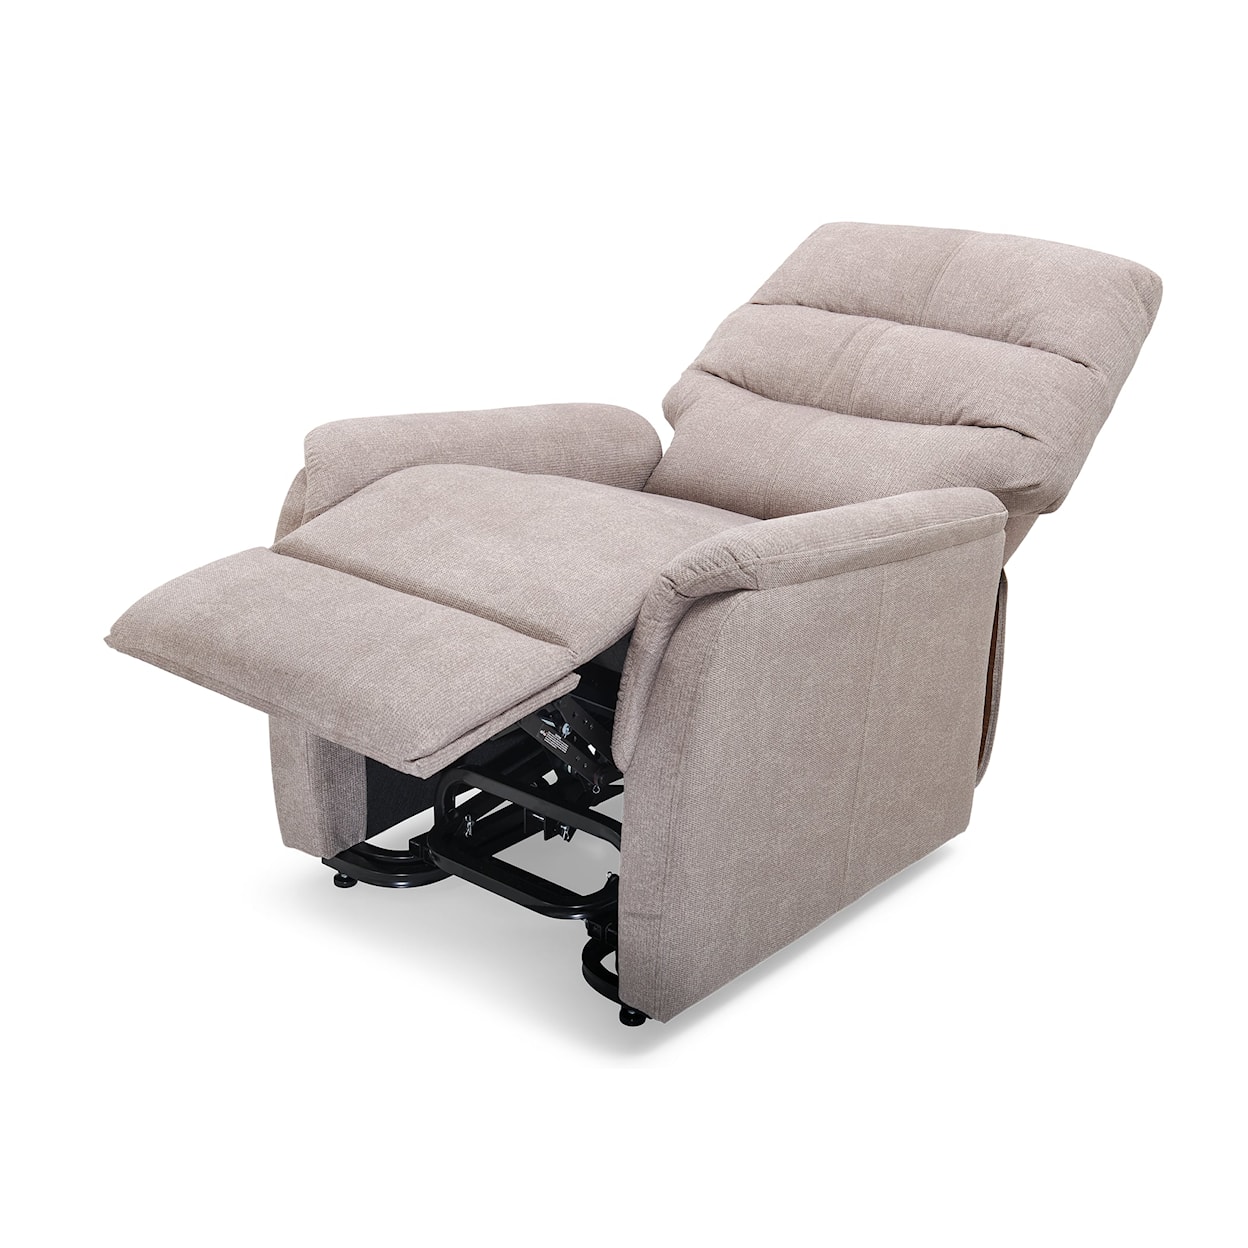 UltraComfort Destin Medium/Small Power Lift Chair Recliner